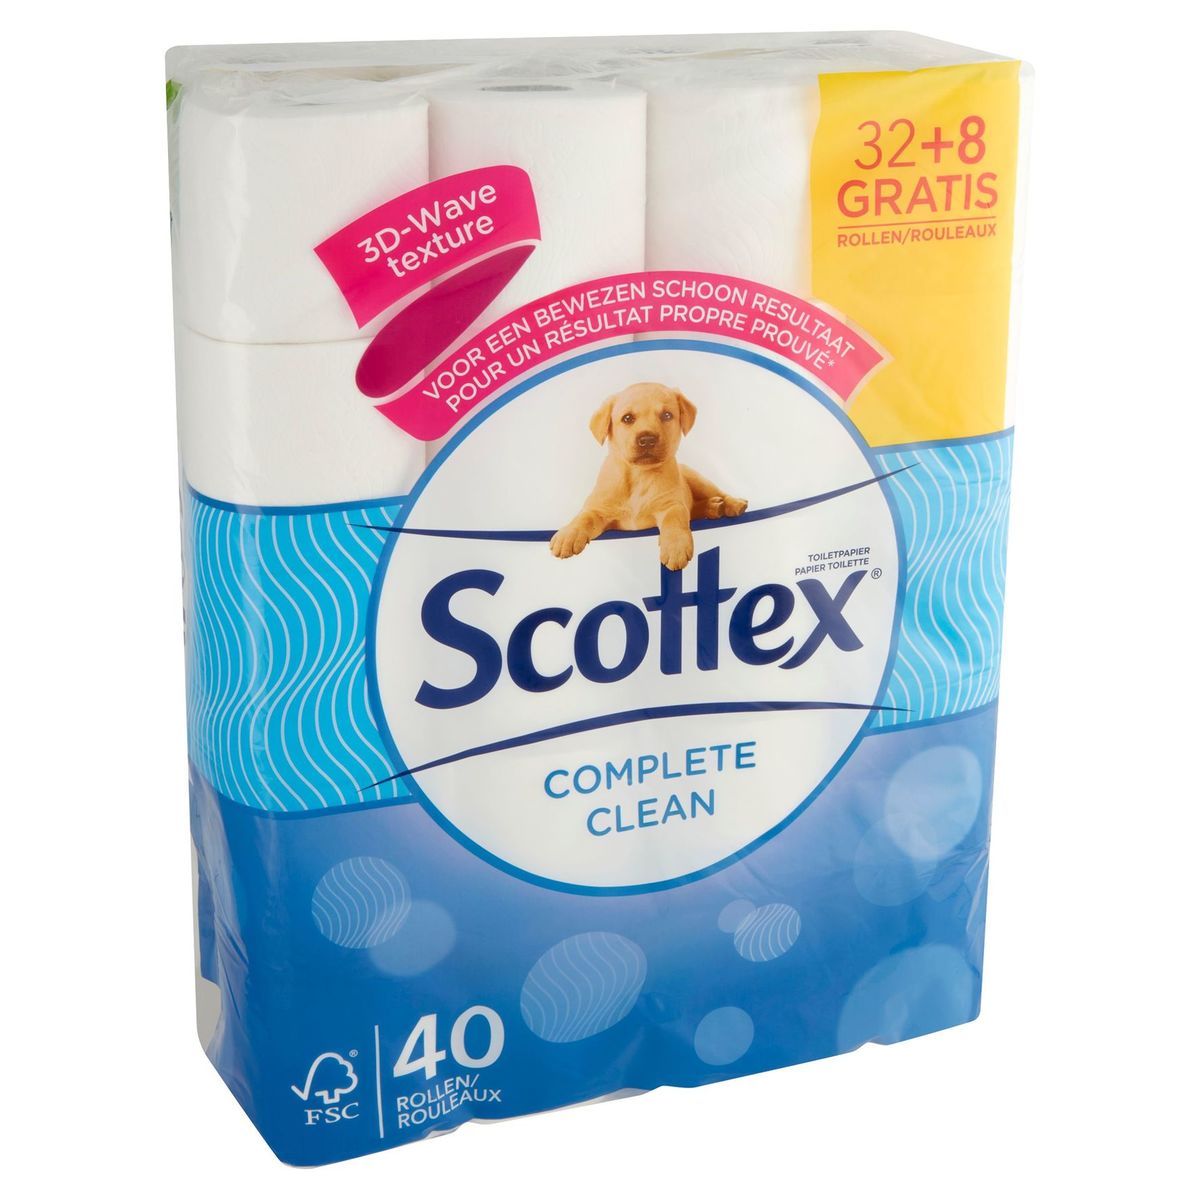 Scottex Toiletpapier Complete Clean 32+8 Gratis Rollen